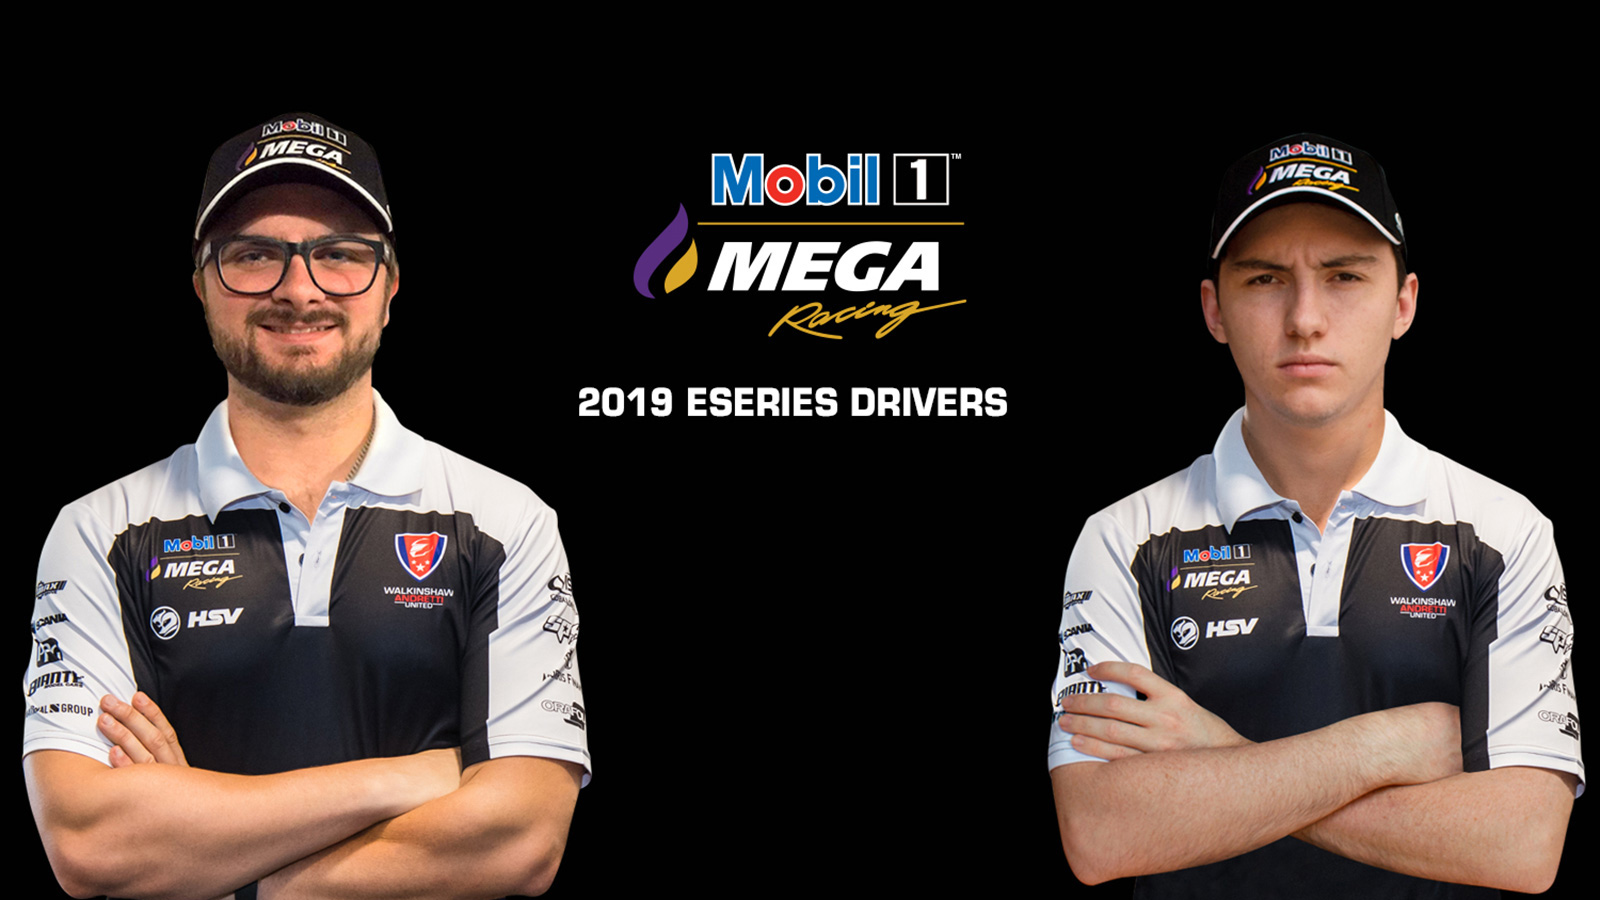 Mobil 1 MEGA Racing Launches Esports Program